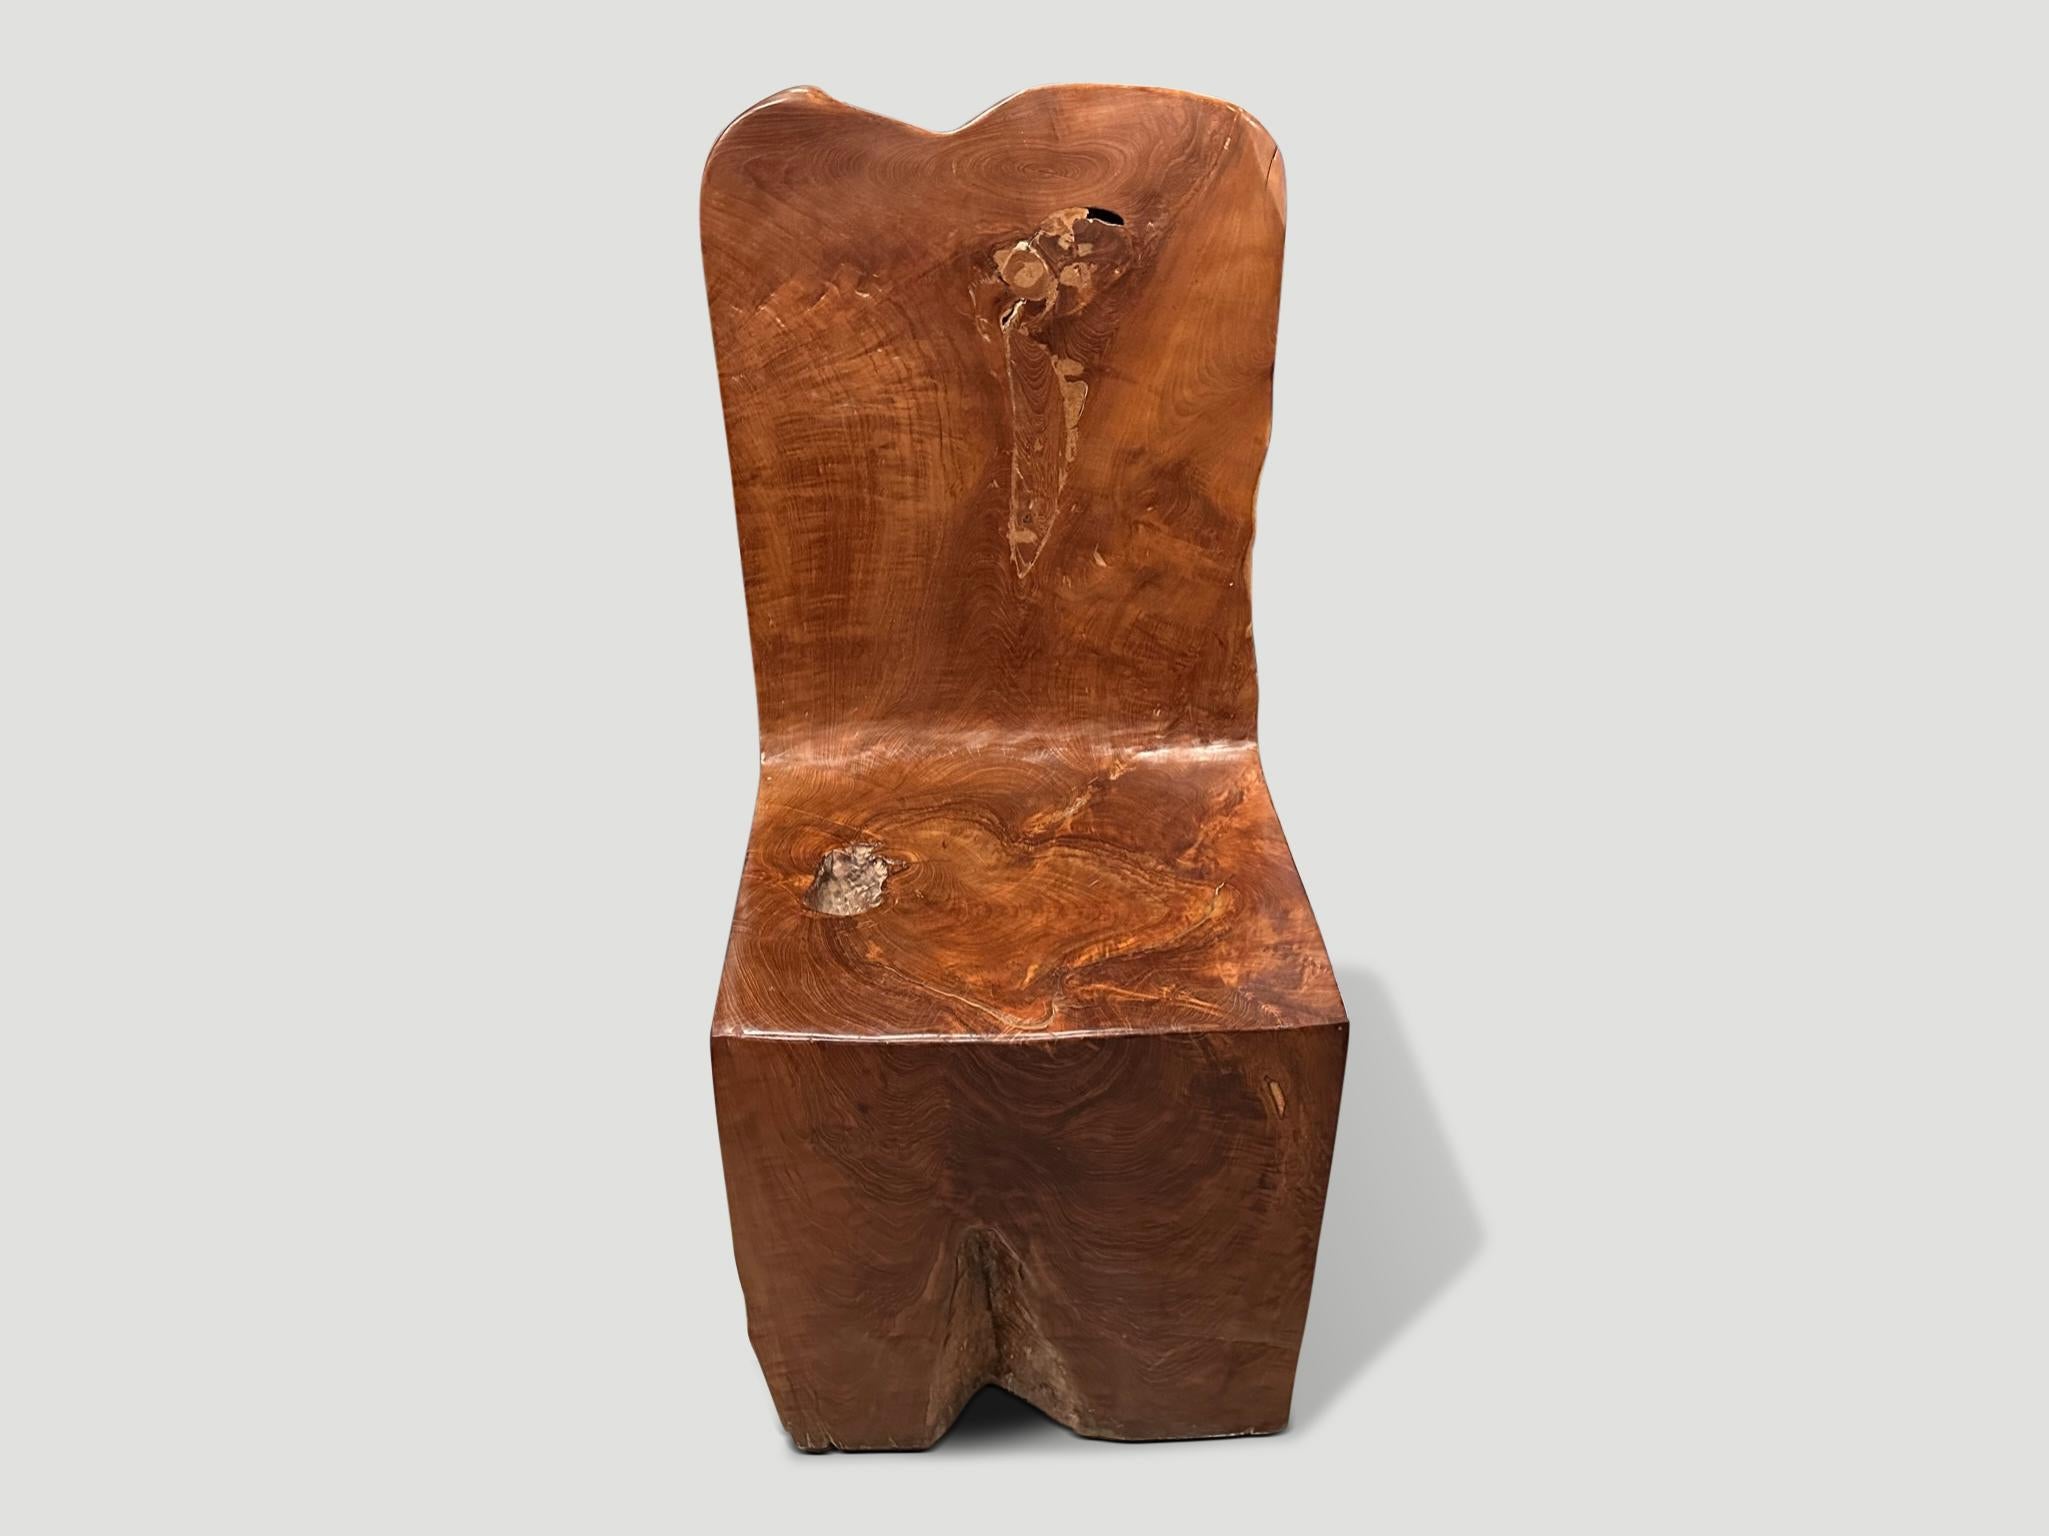 Schöne im Alter von Teakholz handgeschnitzten Stuhl. Dieser skulpturale Stuhl aus massivem Teakholz wurde aus einem einzigen Holzblock handgeschnitzt, wobei das natürliche, organische Holz respektiert wurde. Wir haben einen Satz von vier. Der Preis